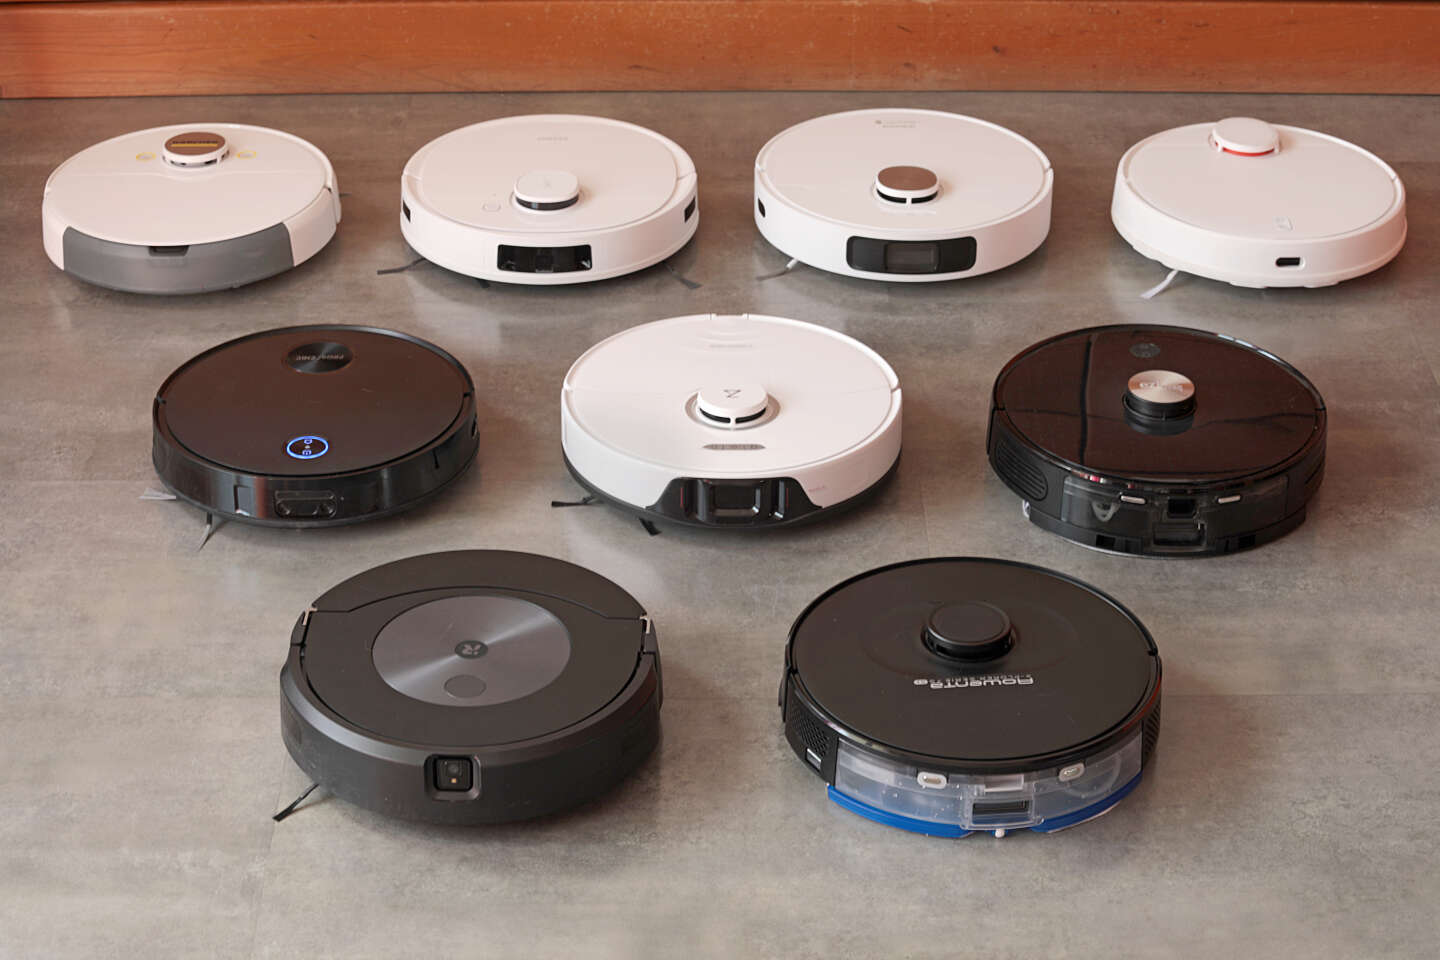 Voici où trouver cet aspirateur laveur robot iRobot Roomba au